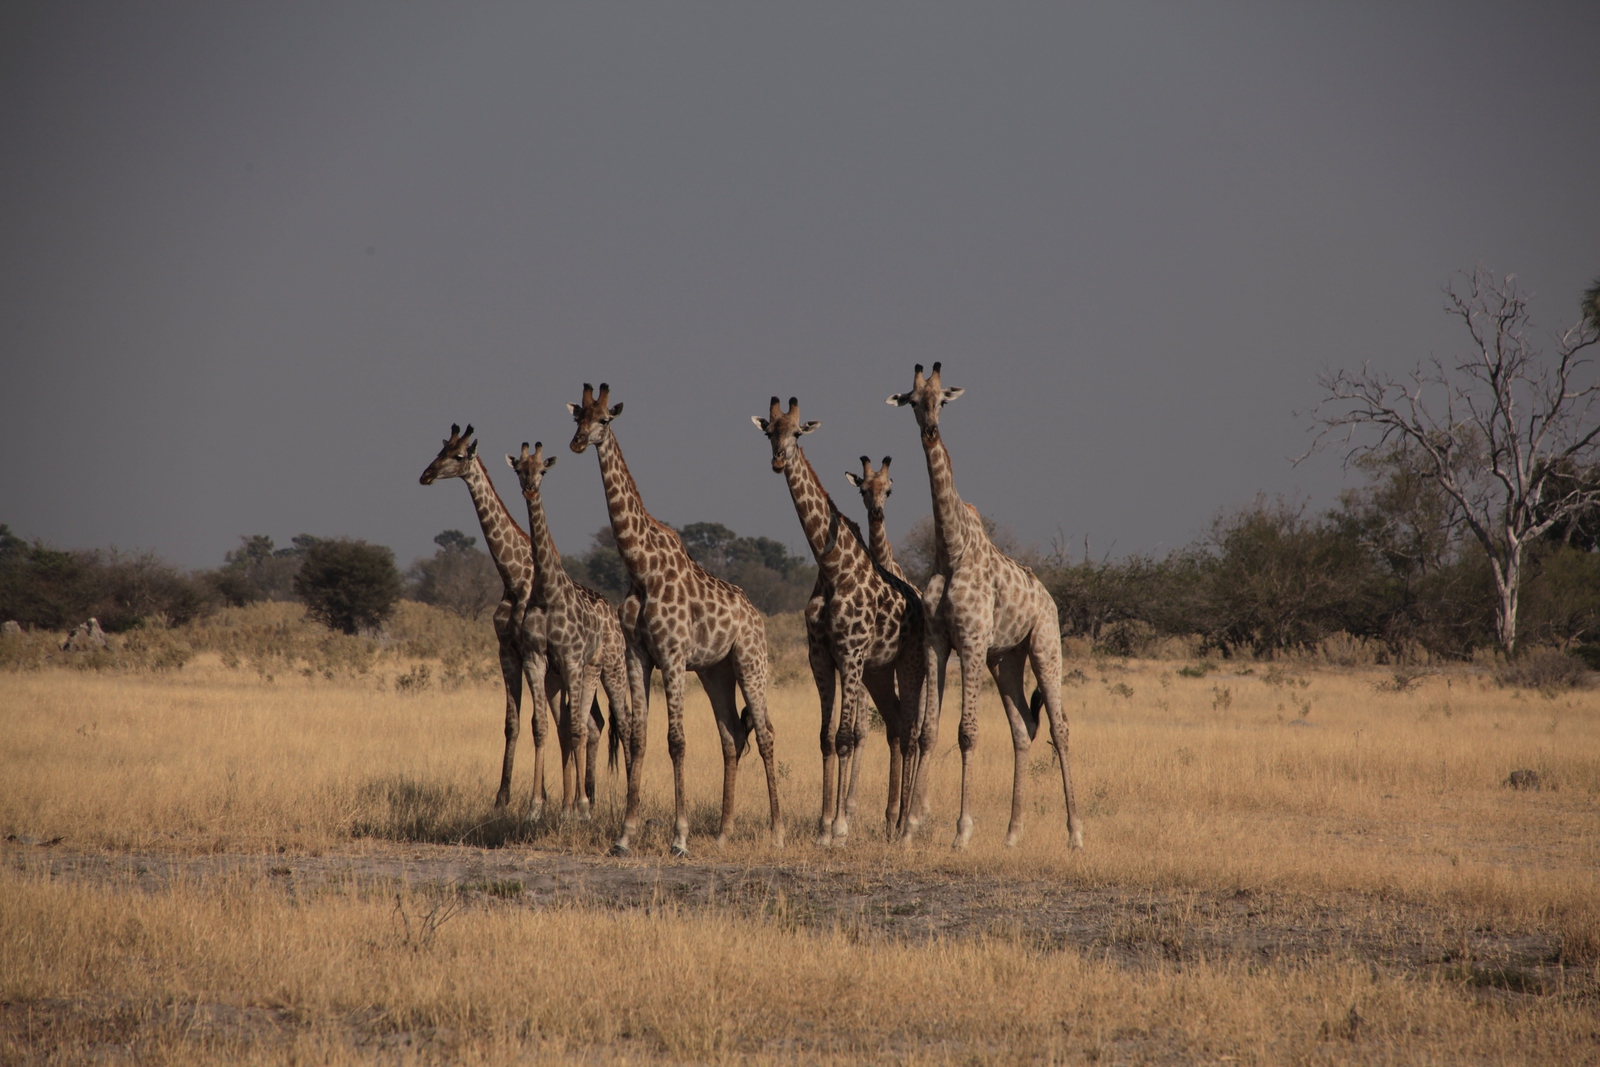 Moremi: Noordelijke giraffe (Giraffa Camelopardalis)